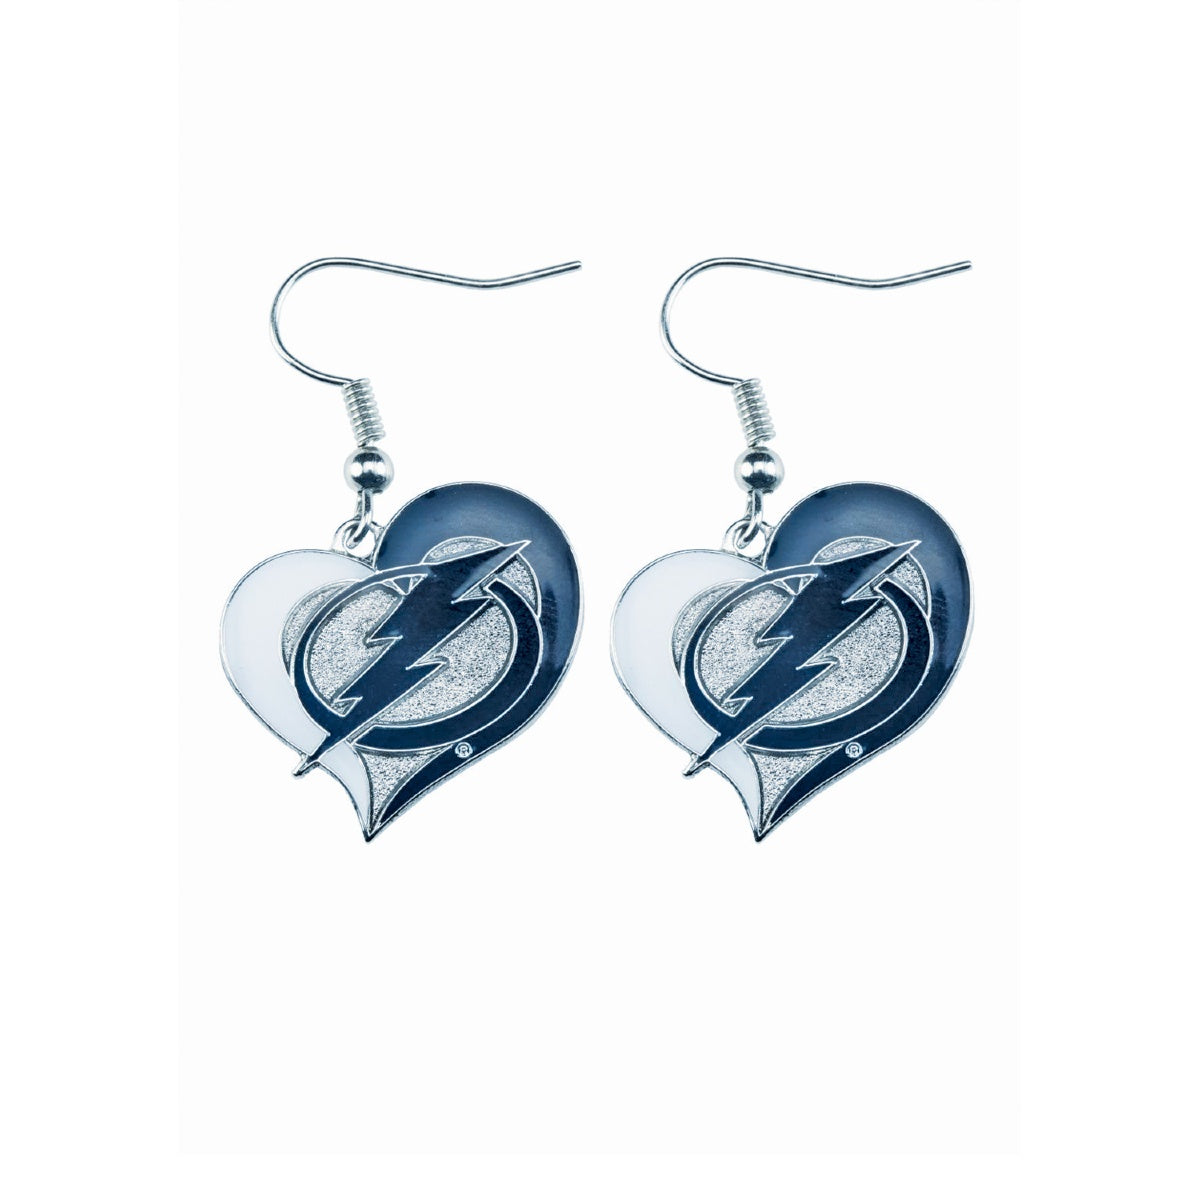 Tampa Bay Lightning Swirl Heart Earrings